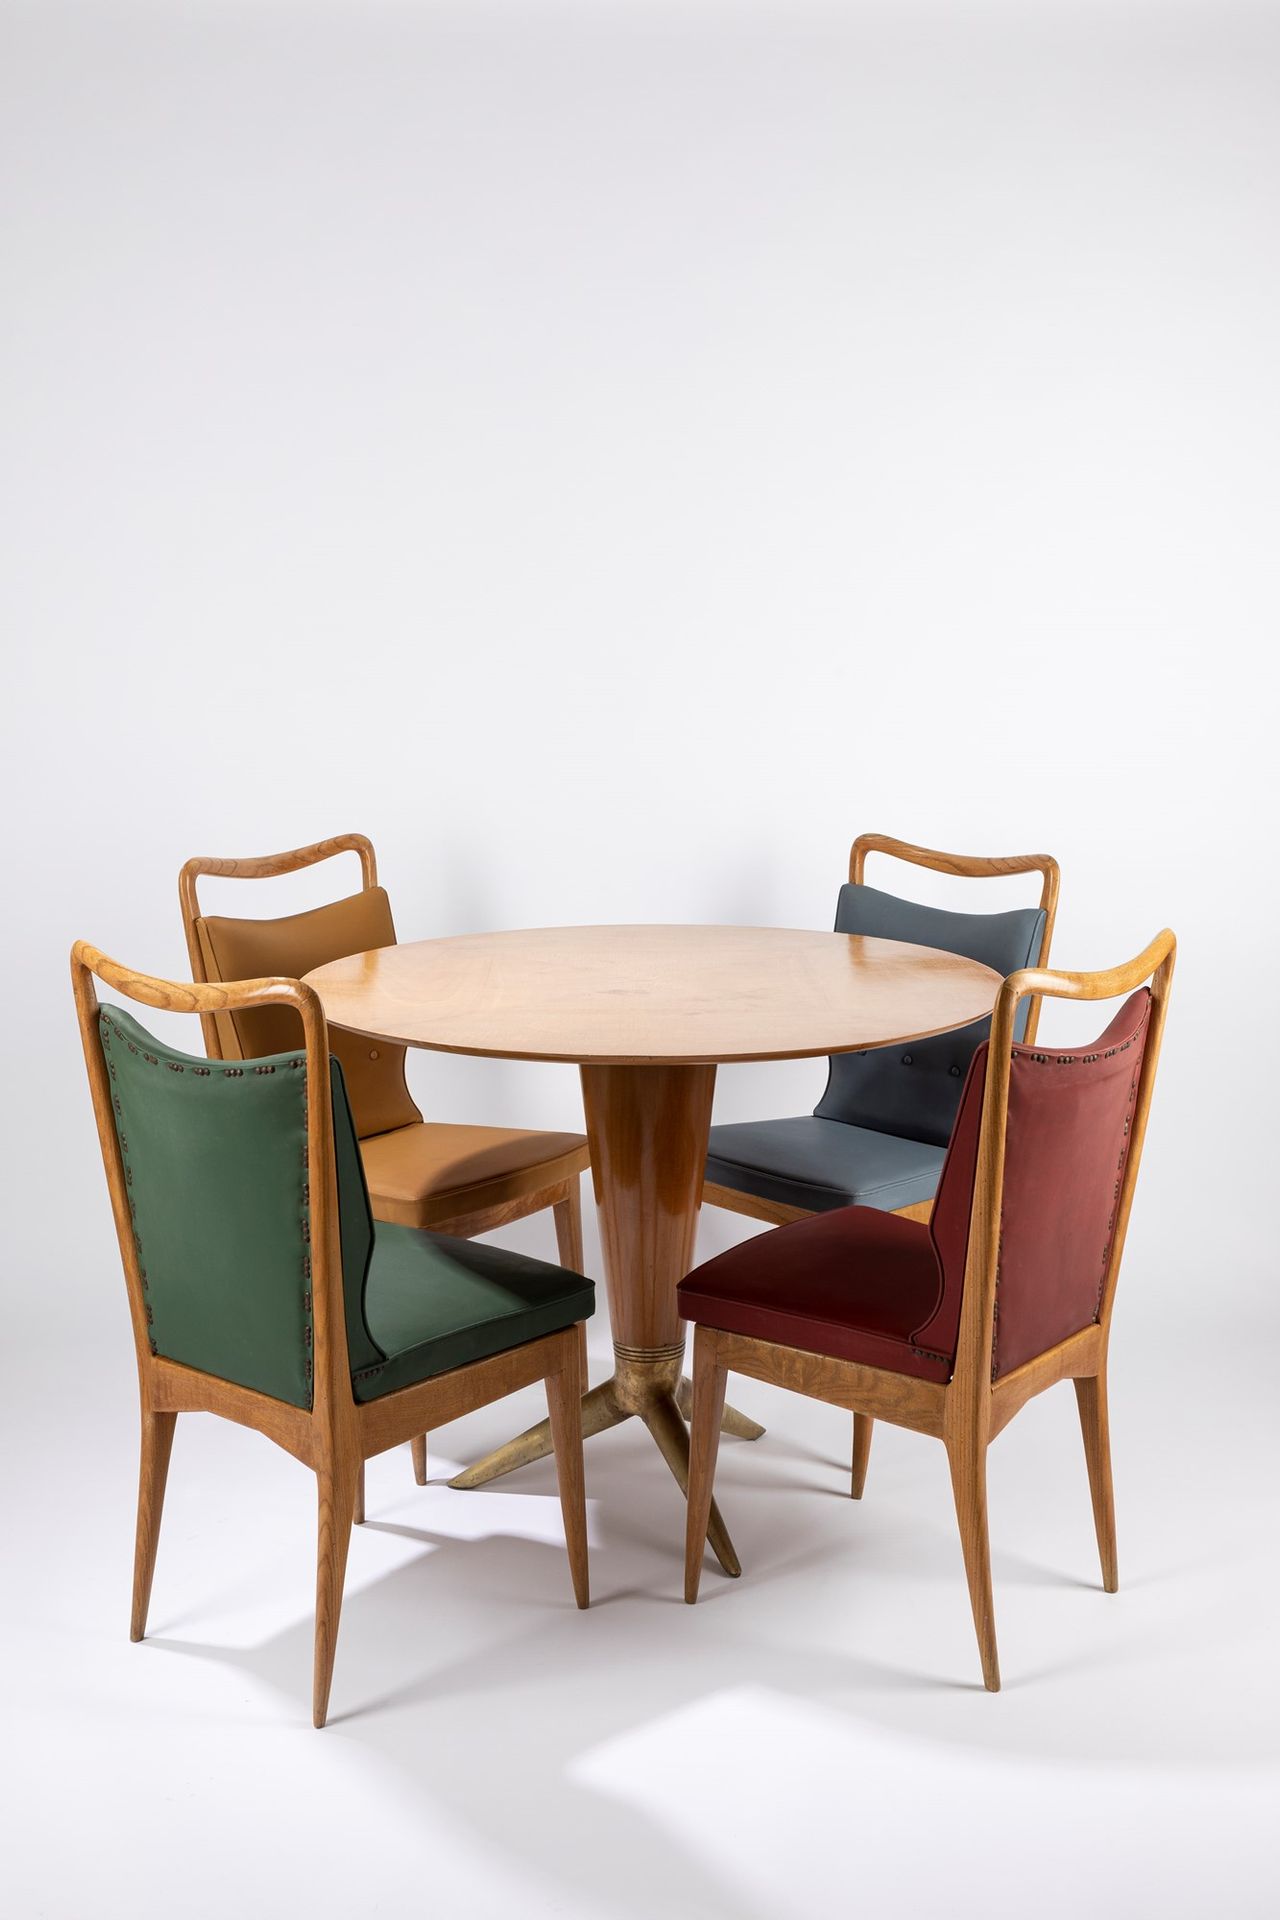 ISA, Bergamo Table et quatre chaises, 1950 env.

Chaises 90 x 50 x 50 - Table 79&hellip;